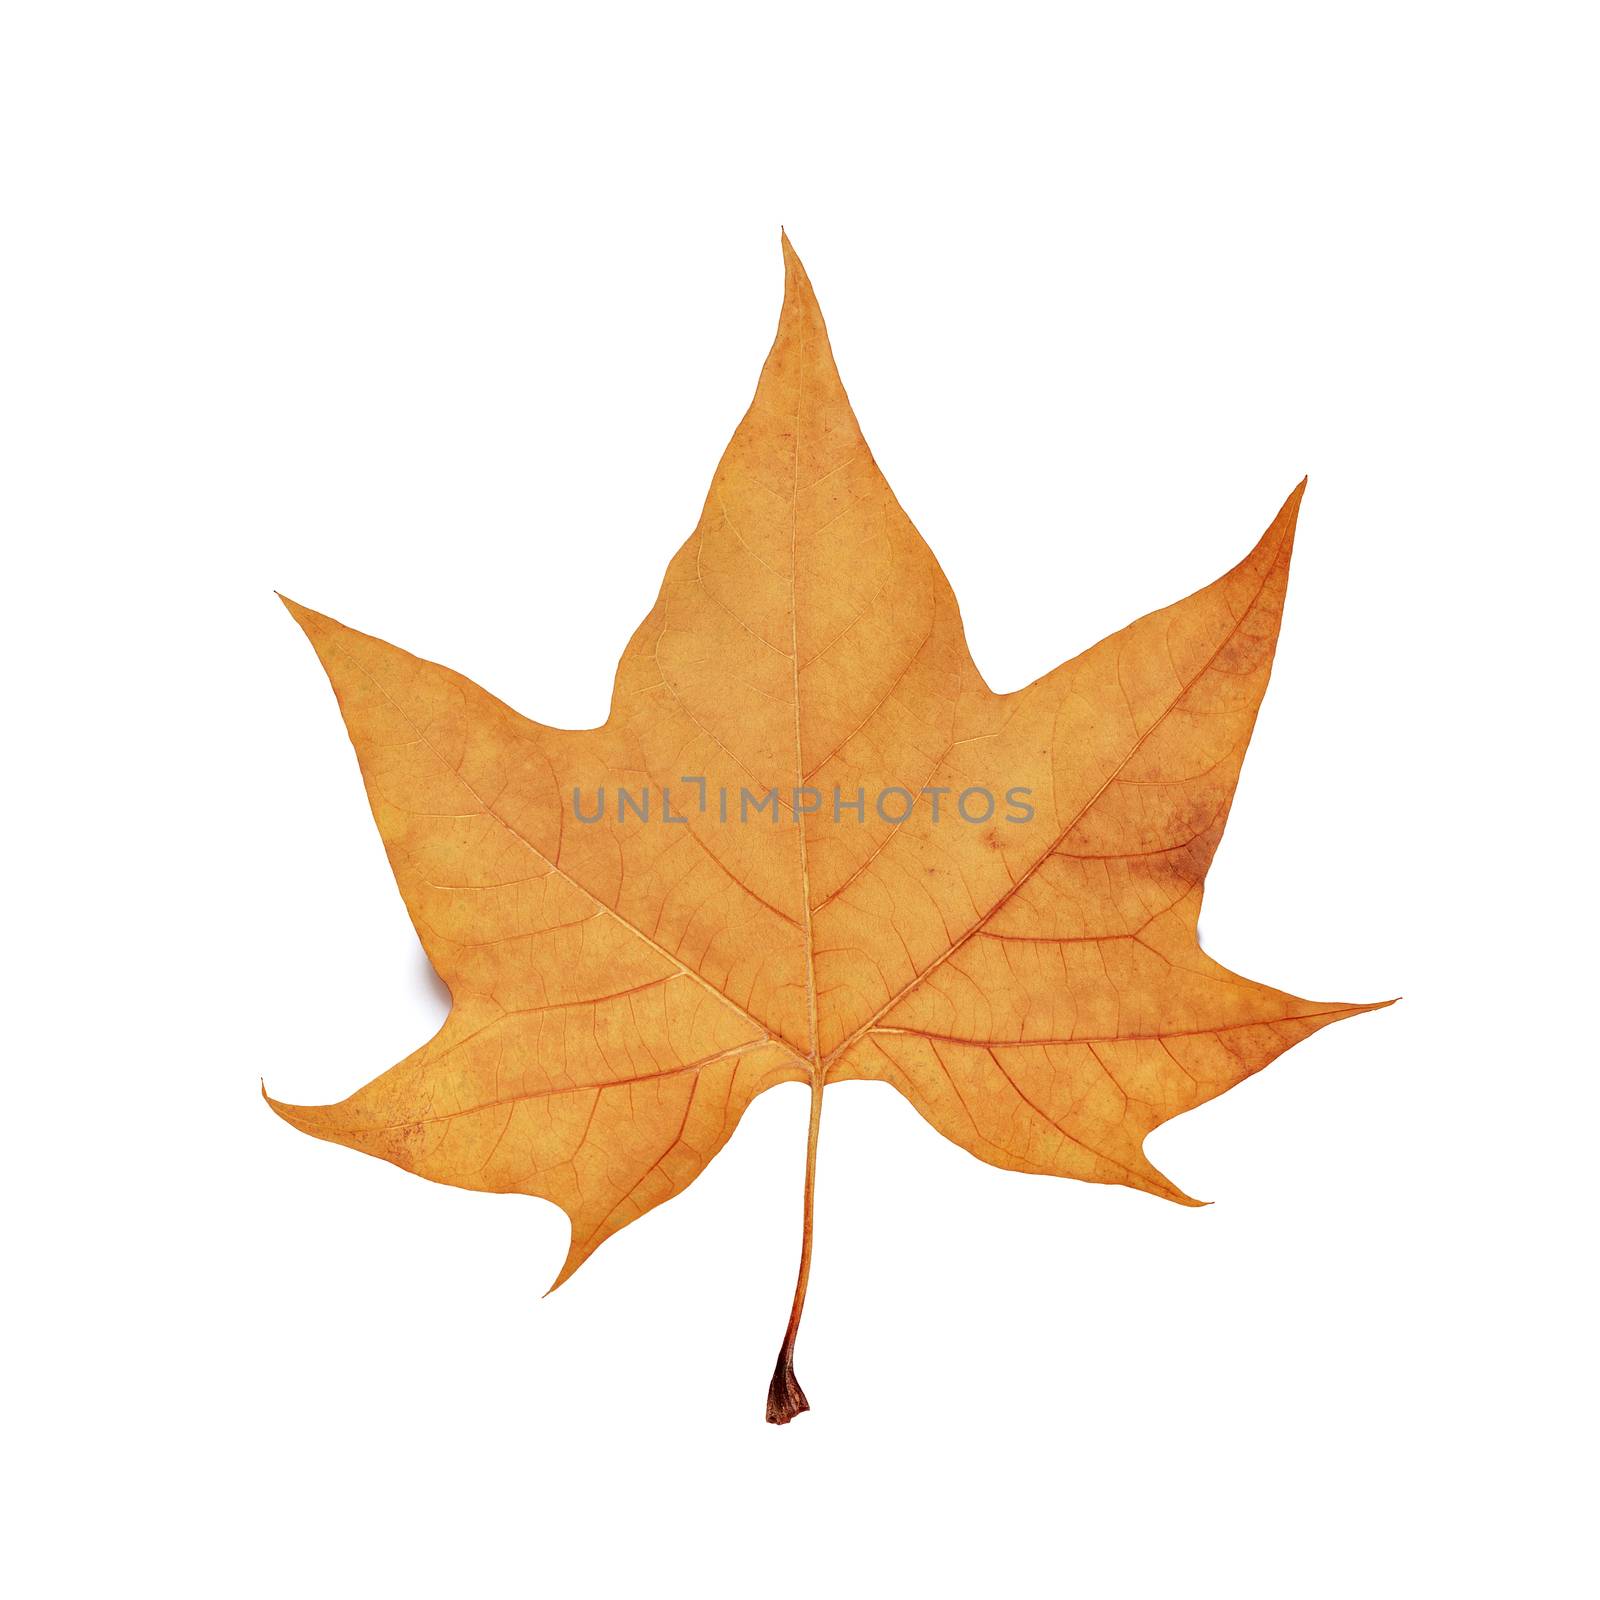 autumn maple leaf isolated on white background.